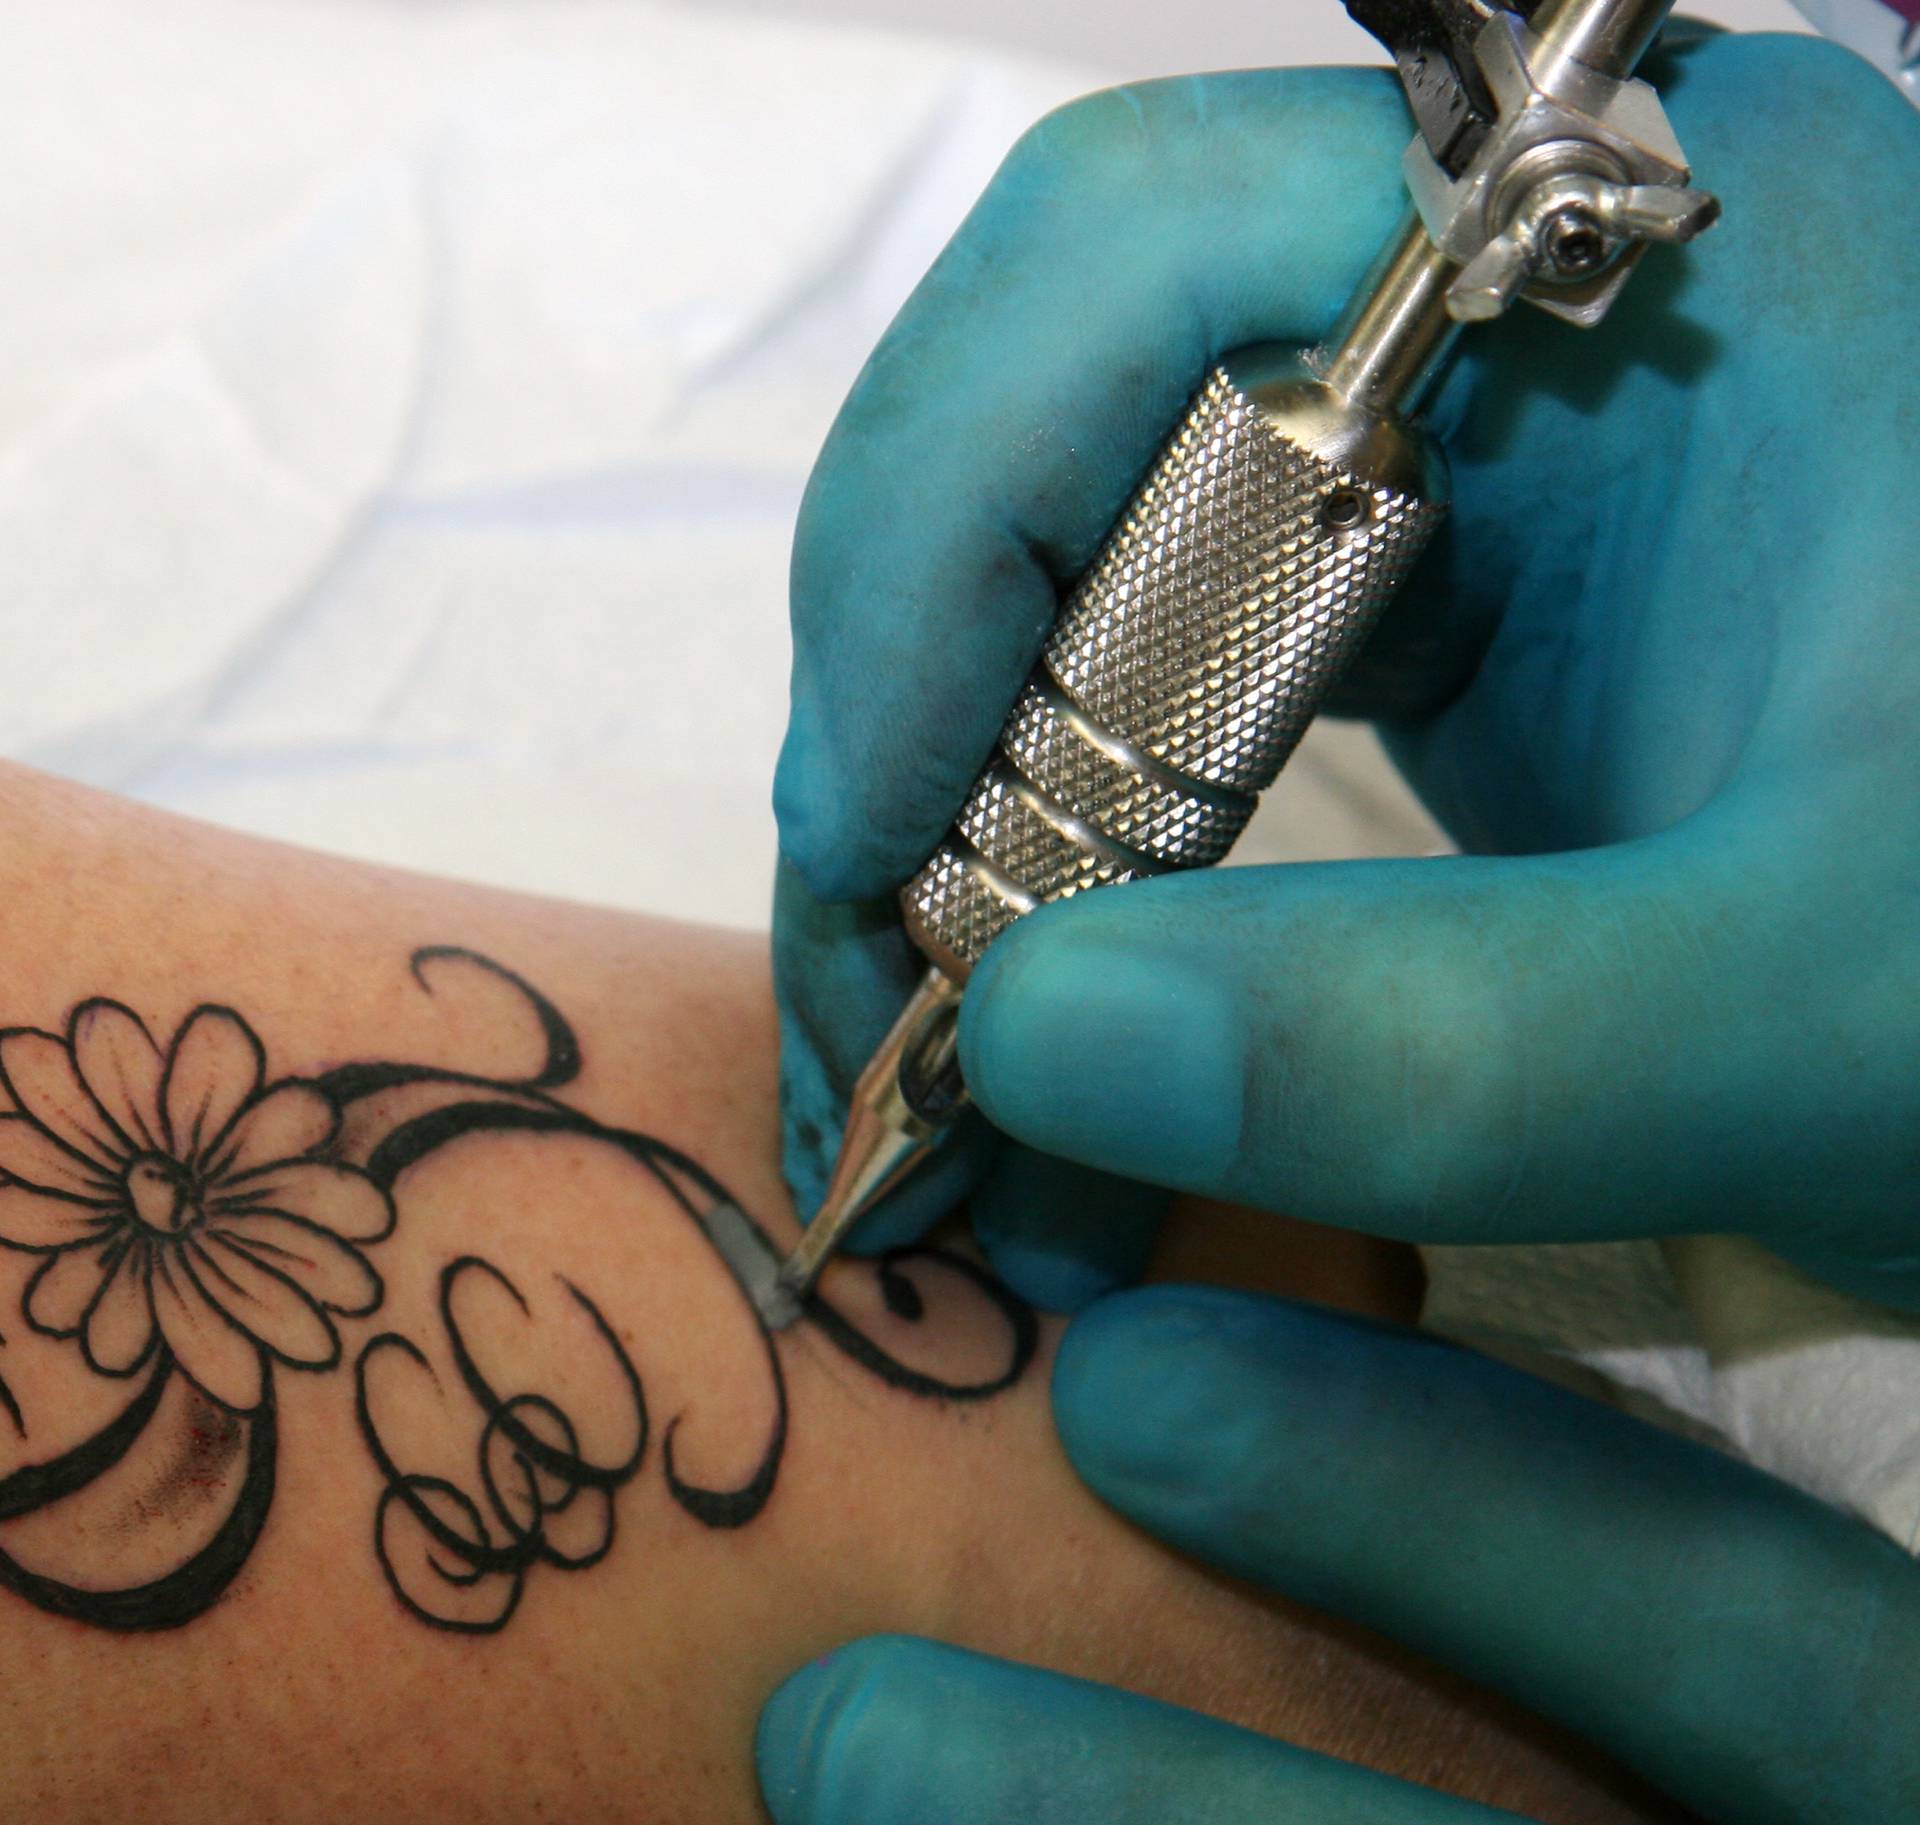 Vjerovali ili ne: Tetovaže jačaju imunitet i štite tijelo od bolesti